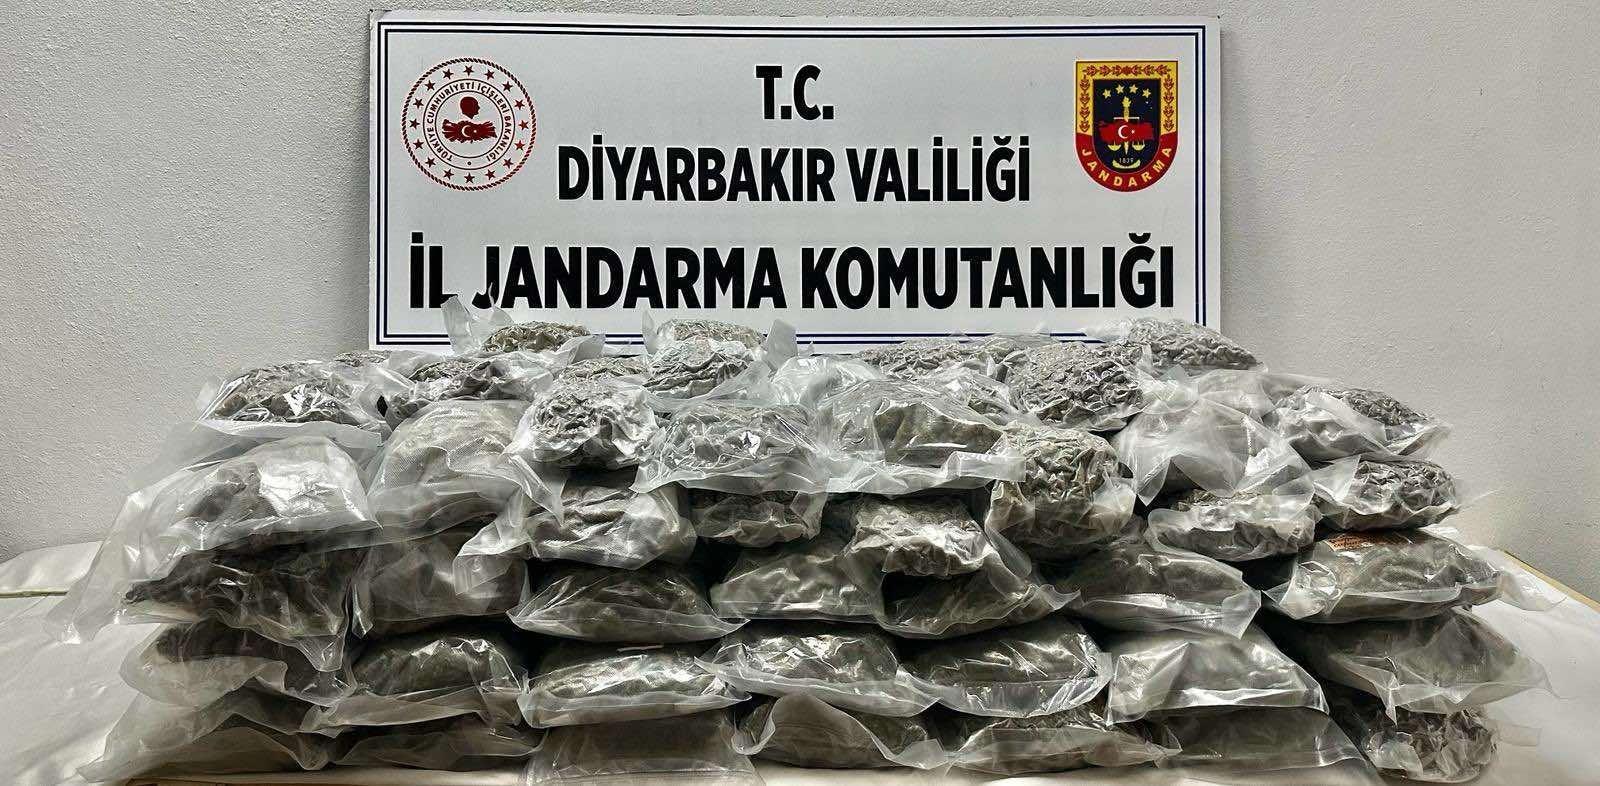 Diyarbakır’da 71 kilogram esrar ele geçirildi